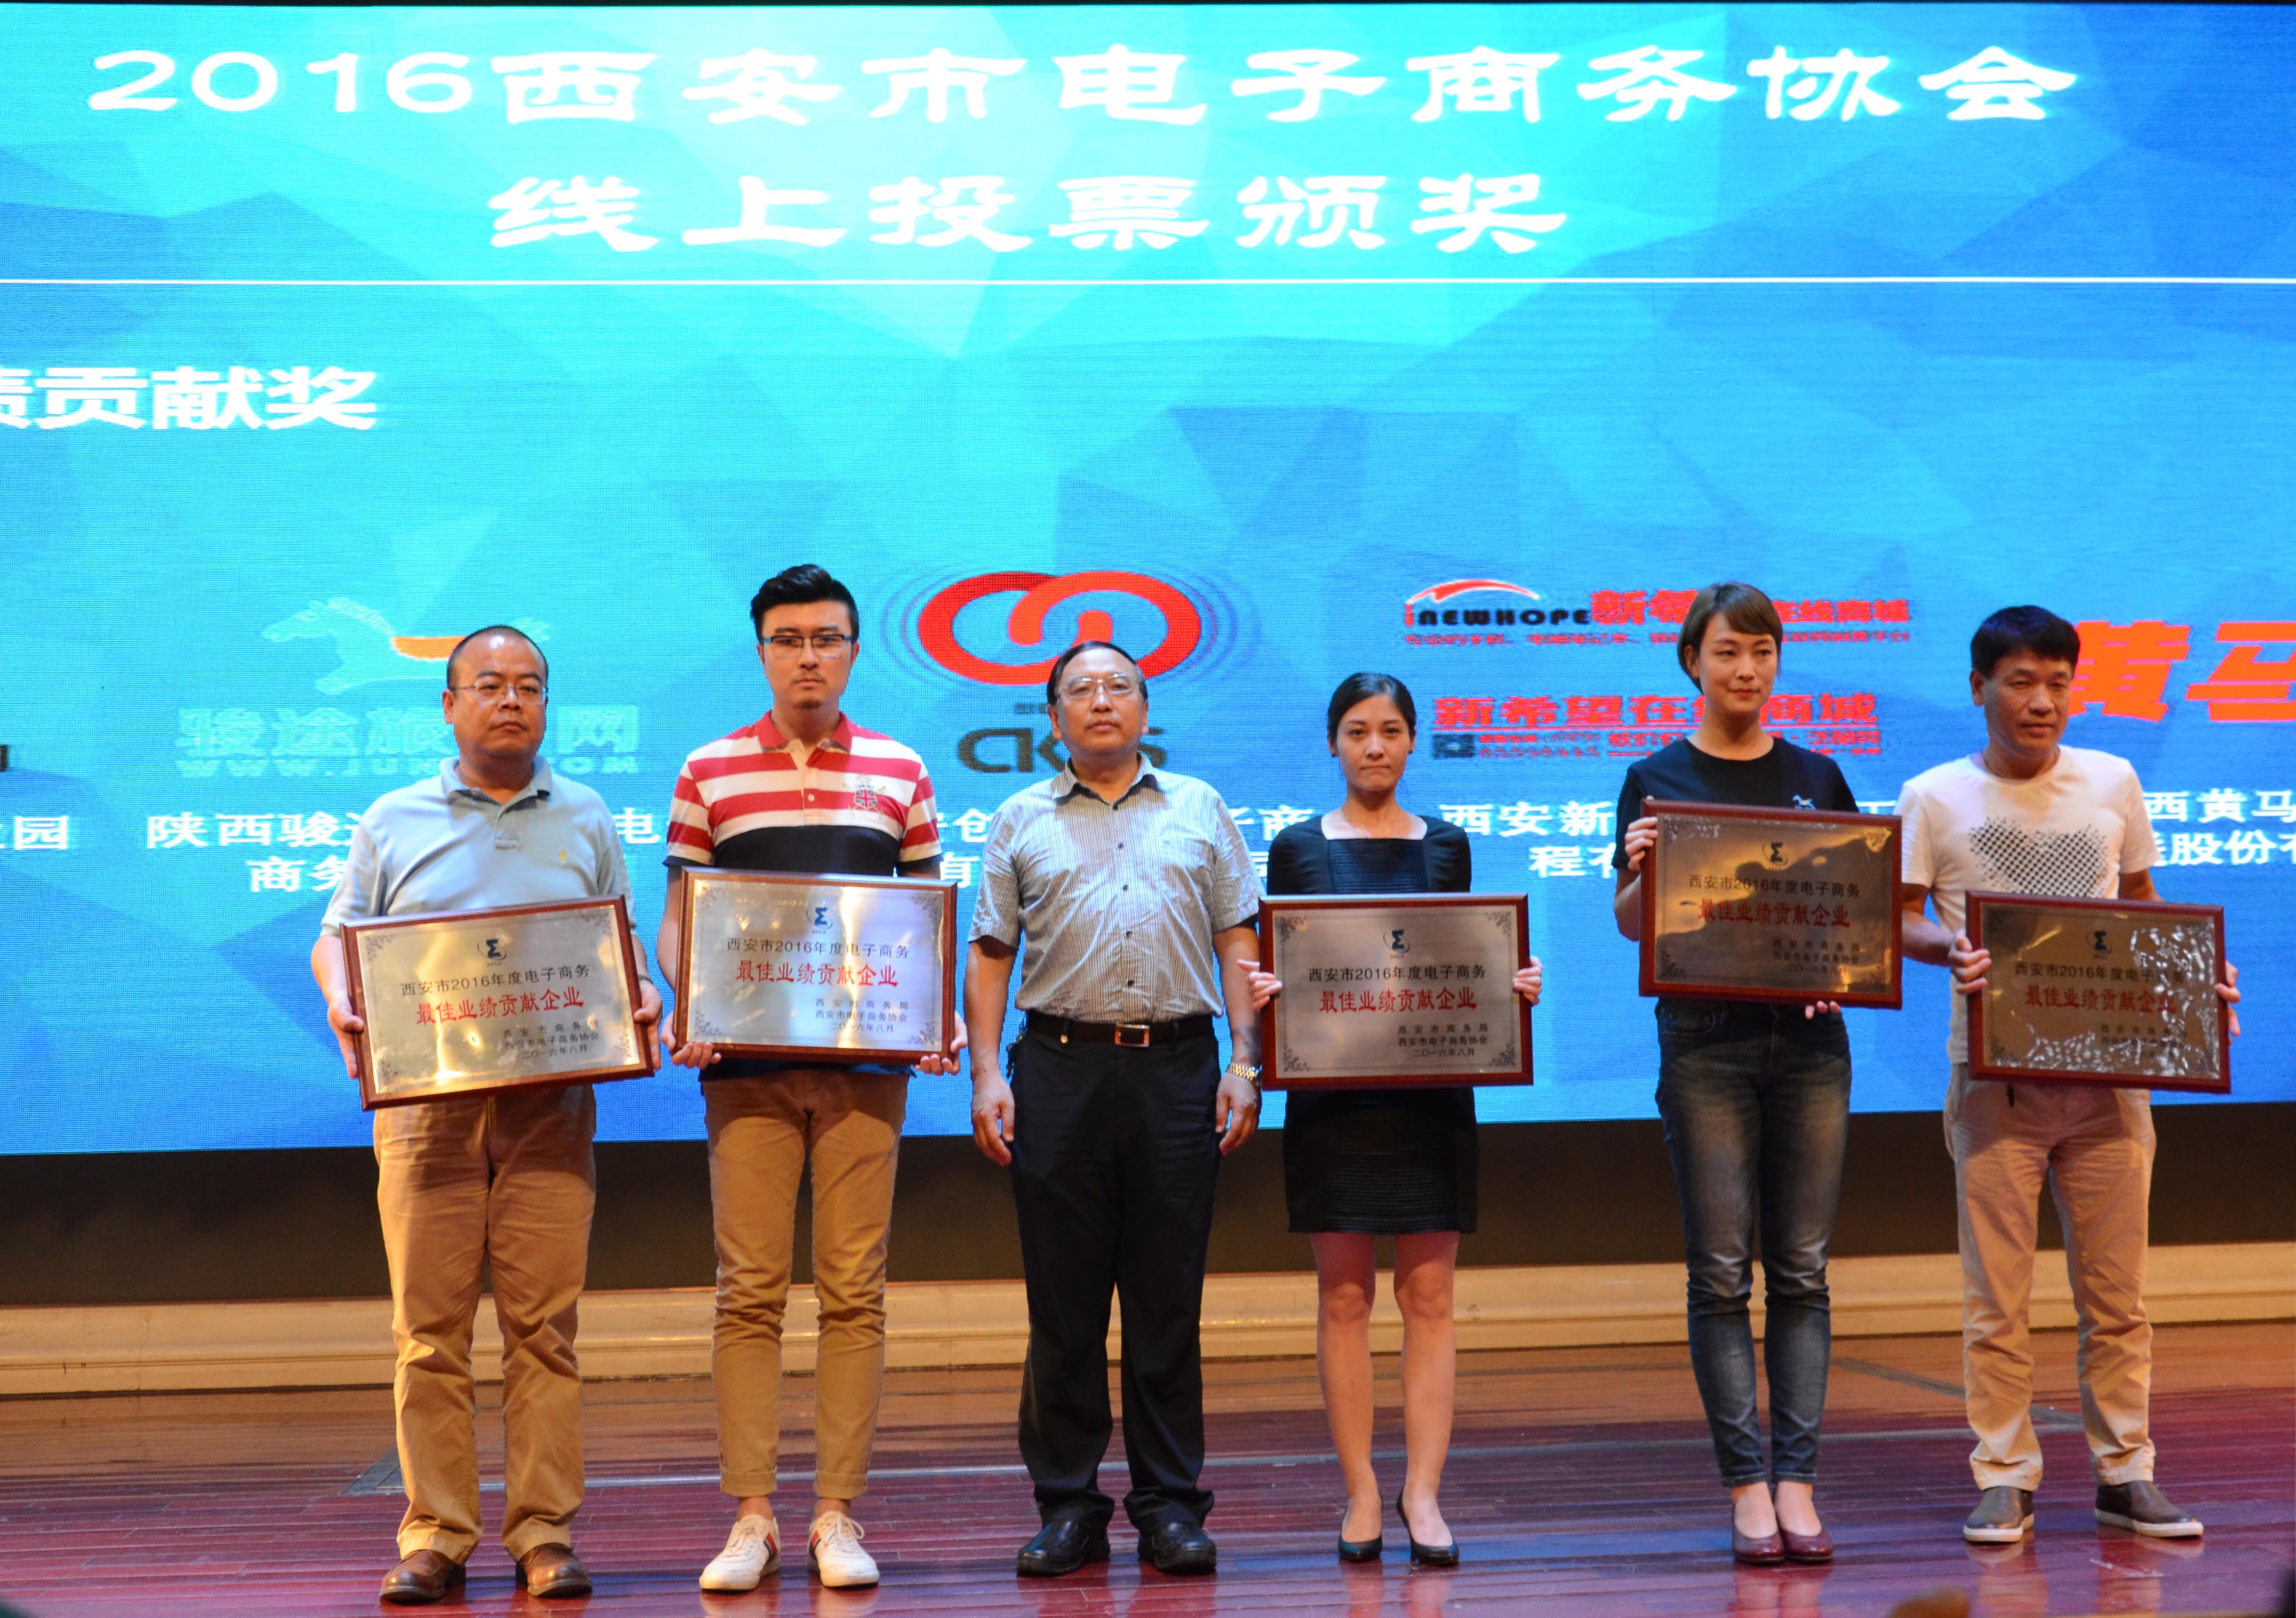 恭喜创客云商获得西安市2016年电子商务最佳业绩贡献企业奖